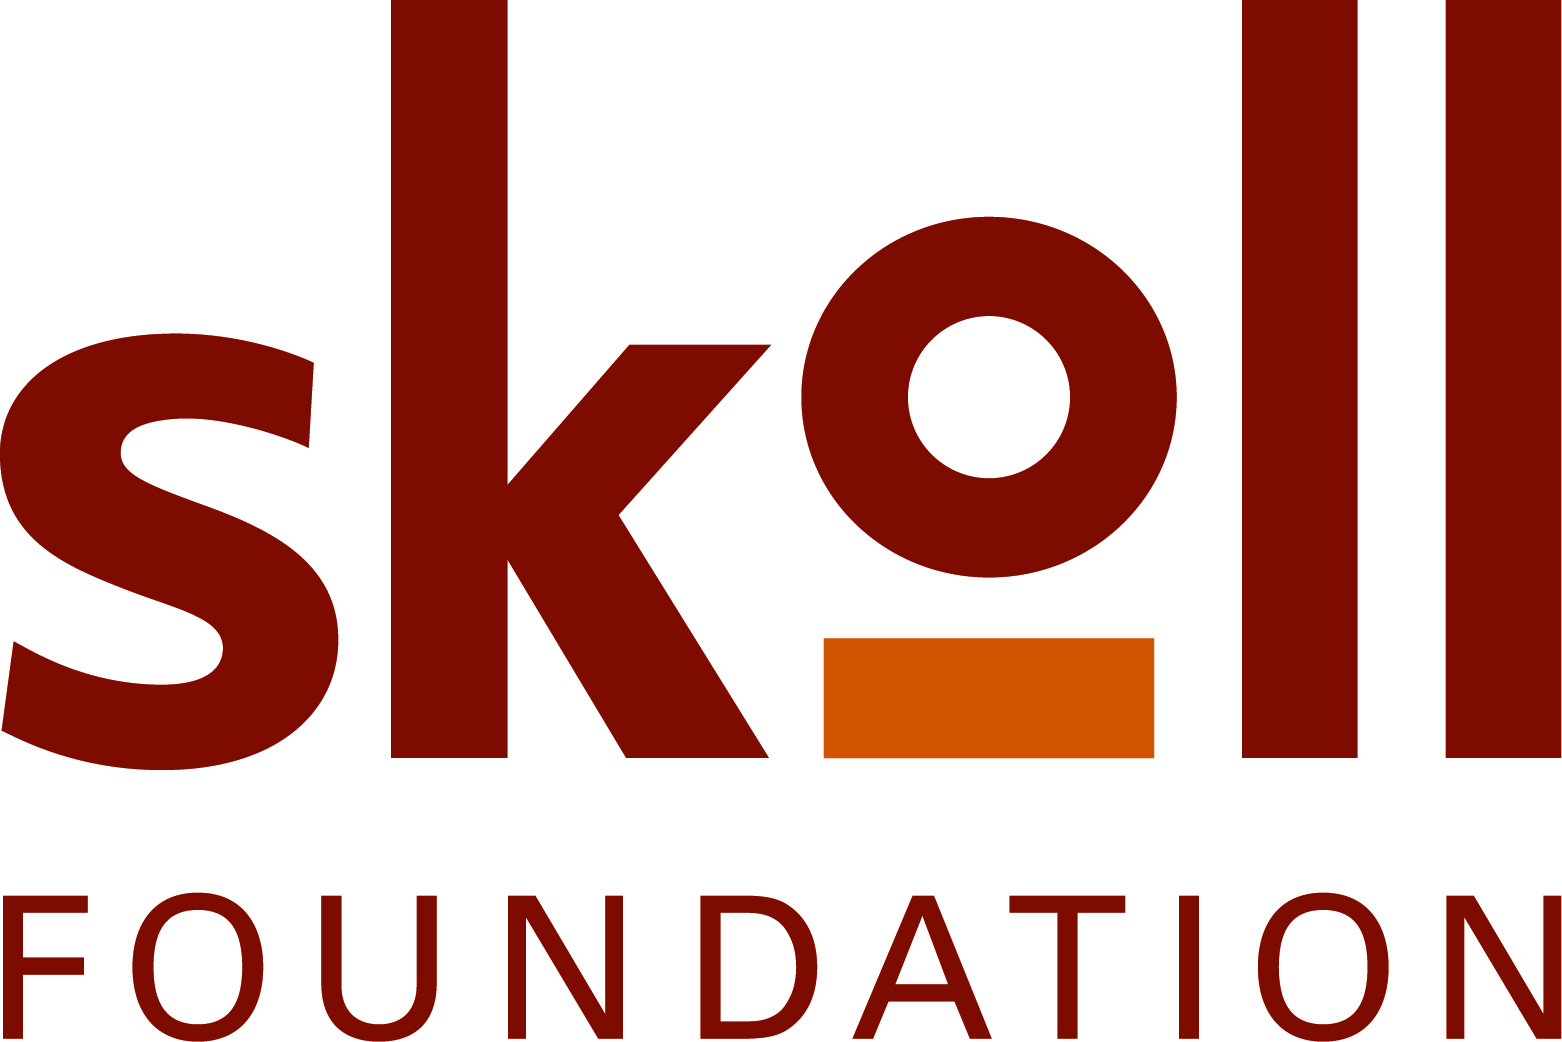 Skoll Foundation